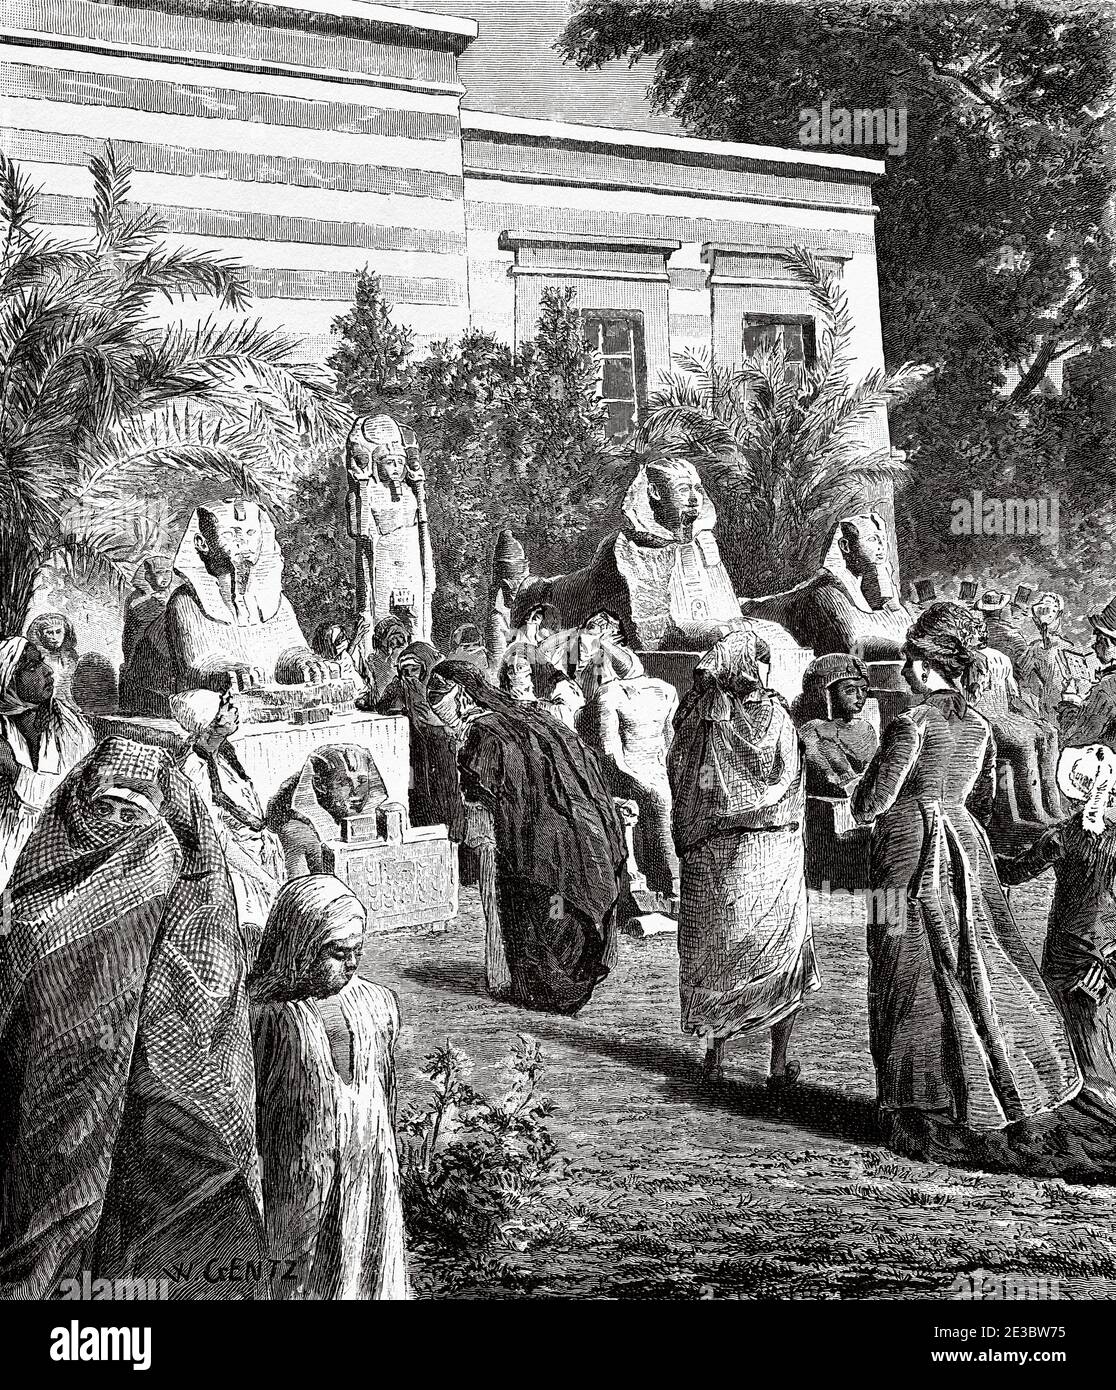 Pórtico del Museo de Antigüedades de Boolak, Antiguo Egipto. Antiguo siglo XIX grabado ilustración, el Mundo ilustrado 1880 Foto de stock